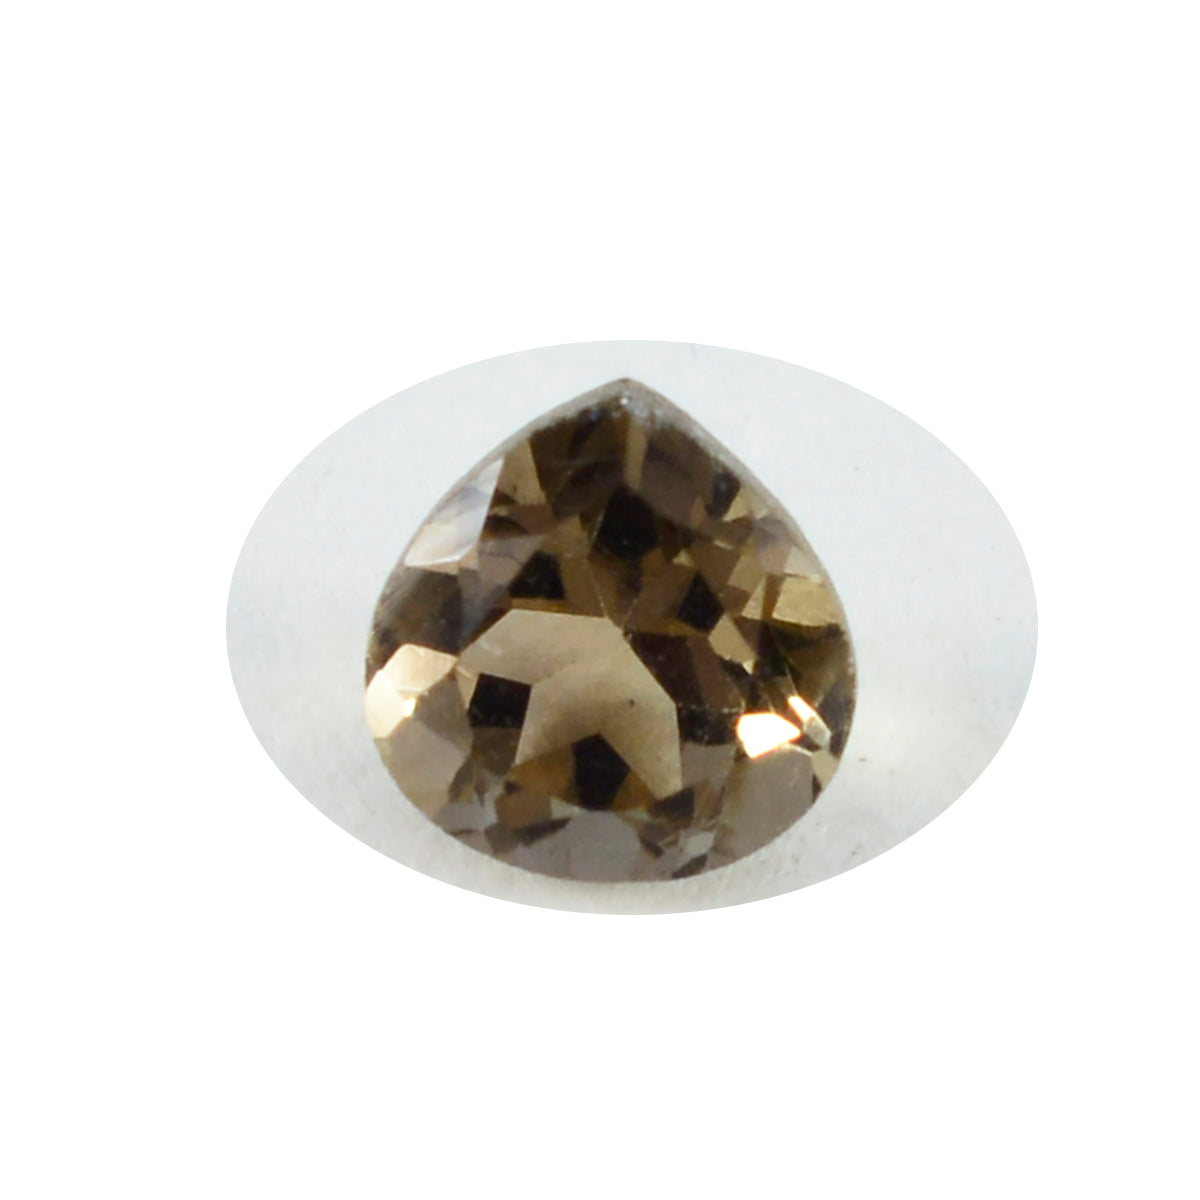 riyogems 1 шт. настоящий коричневый дымчатый кварц граненый 9x9 мм в форме сердца A + качество свободный камень